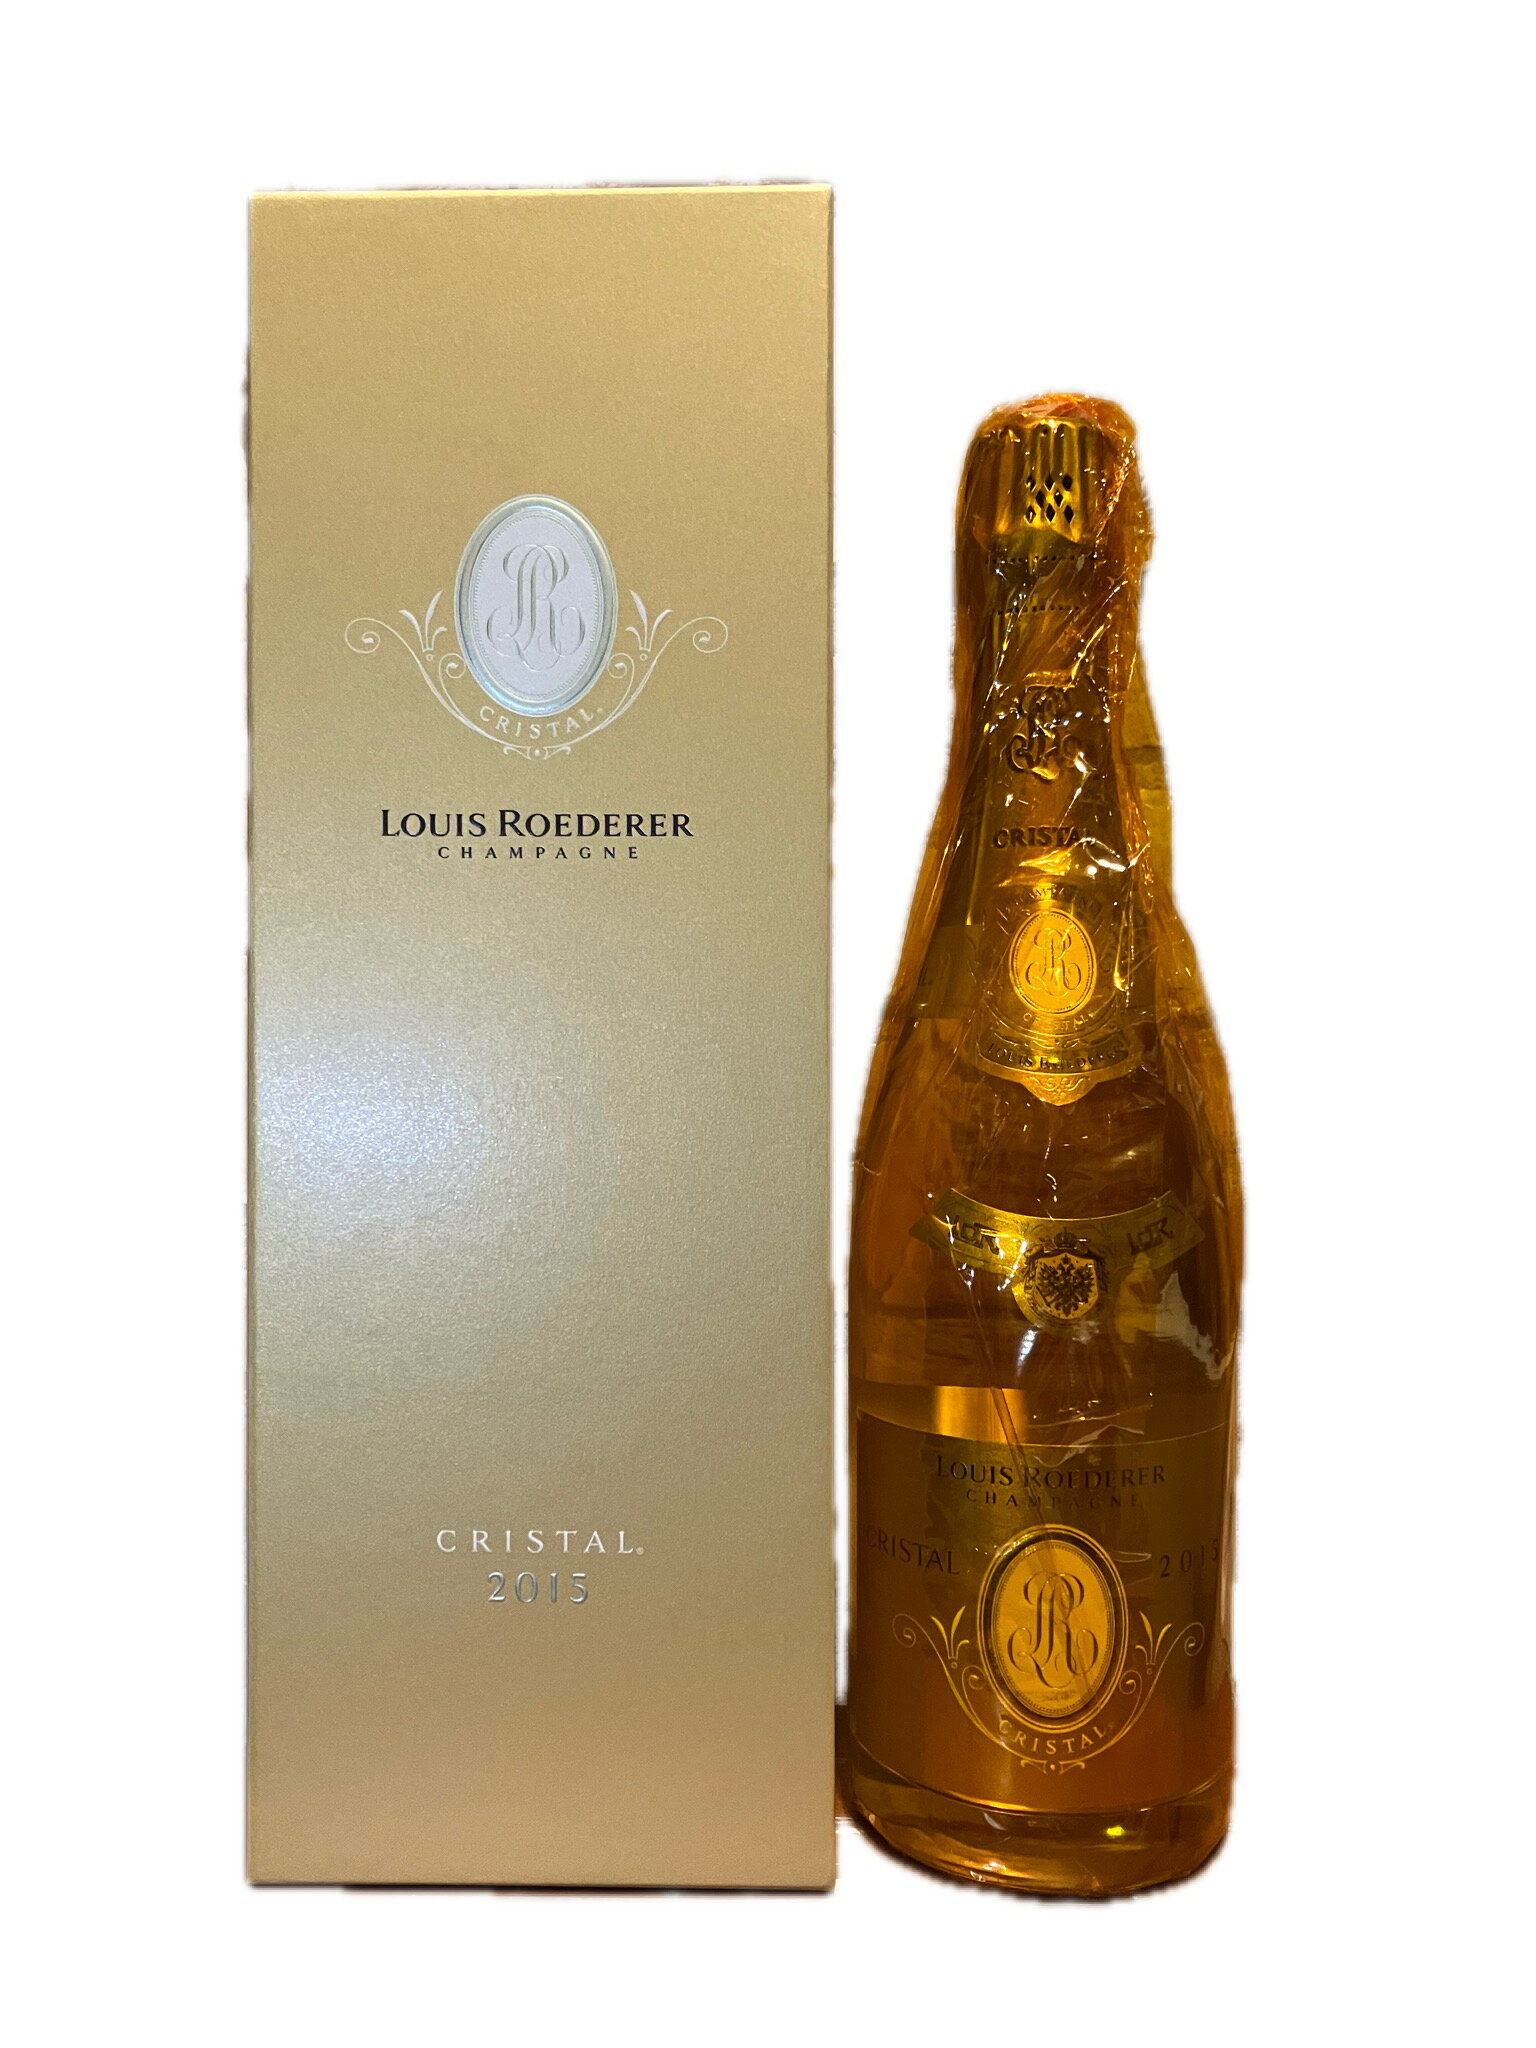 ルイ ロデレール クリスタル 2015 辛口 ミディアムボディ 750ml シャンパン 泡 白 フランス シャンパーニュ 12度